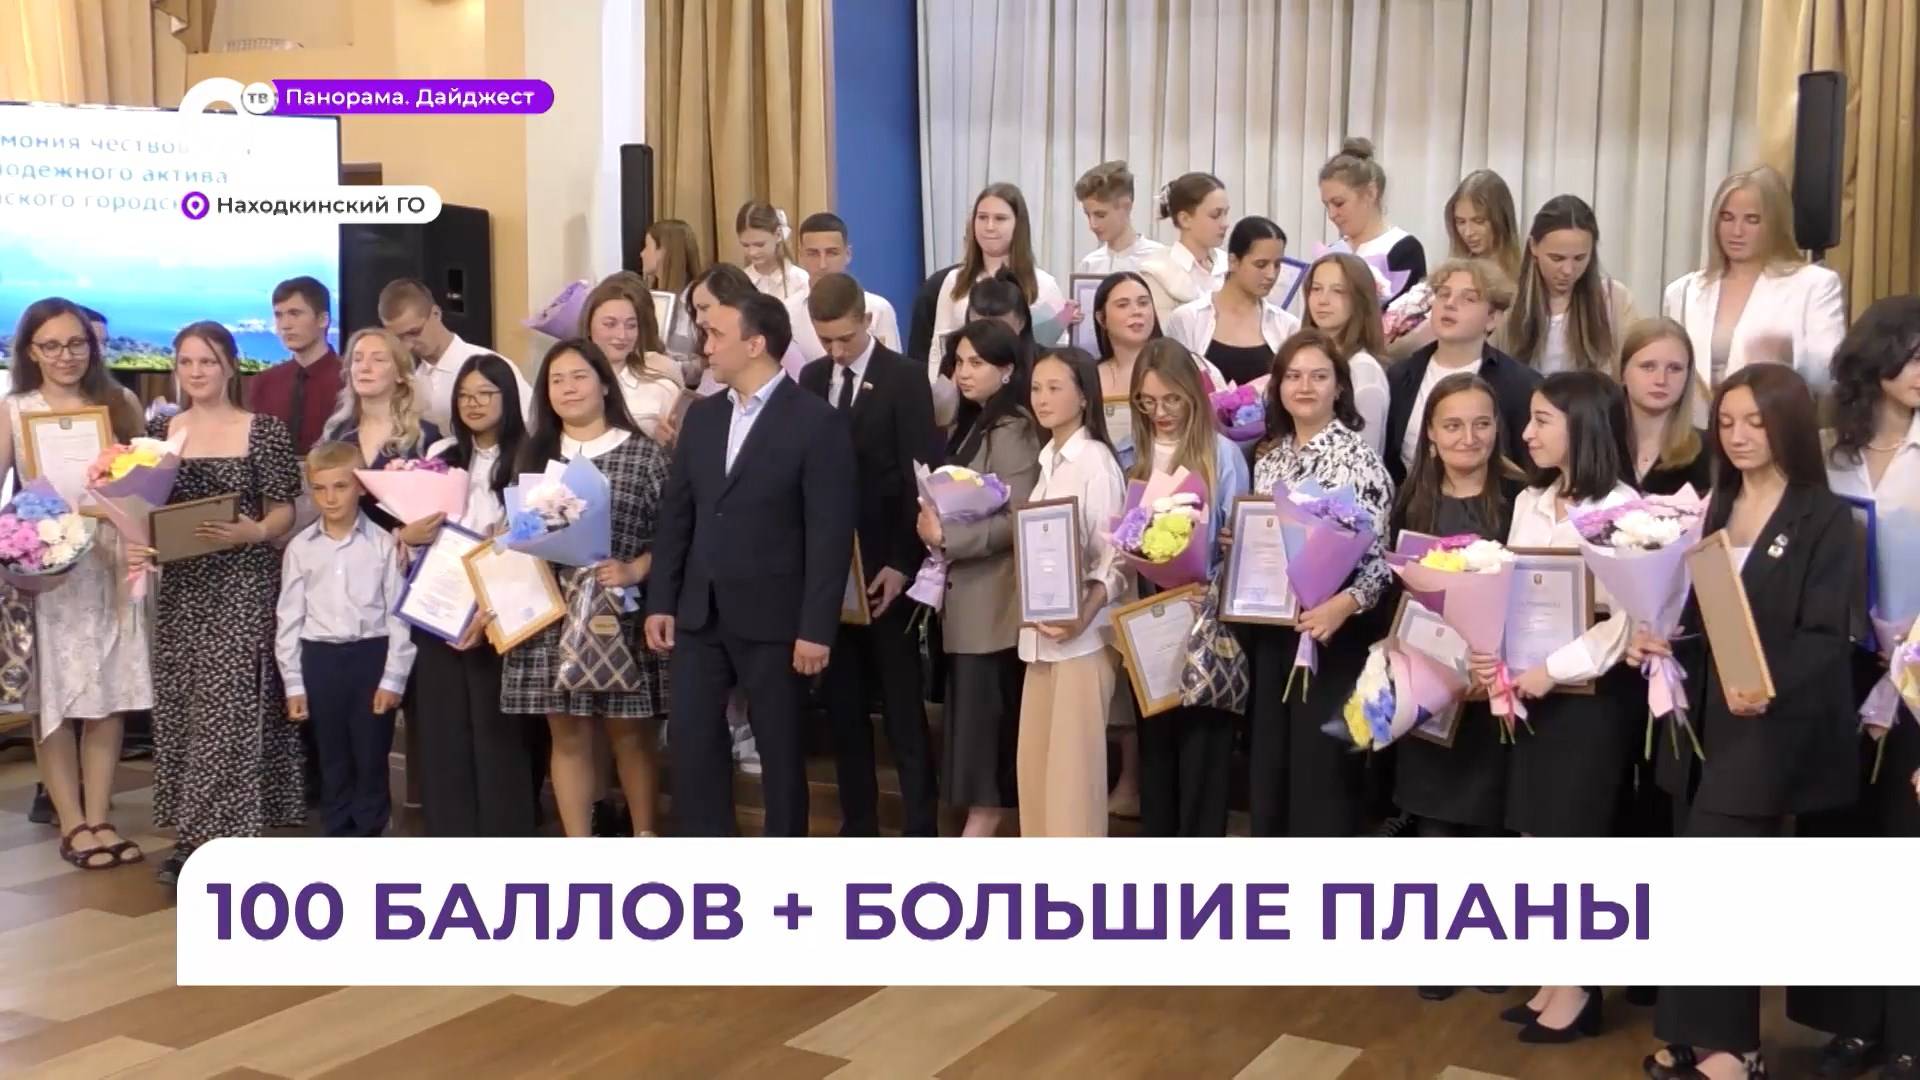 19 школьников и студентов Находки стали стипендиатами главы Находкинского ГО